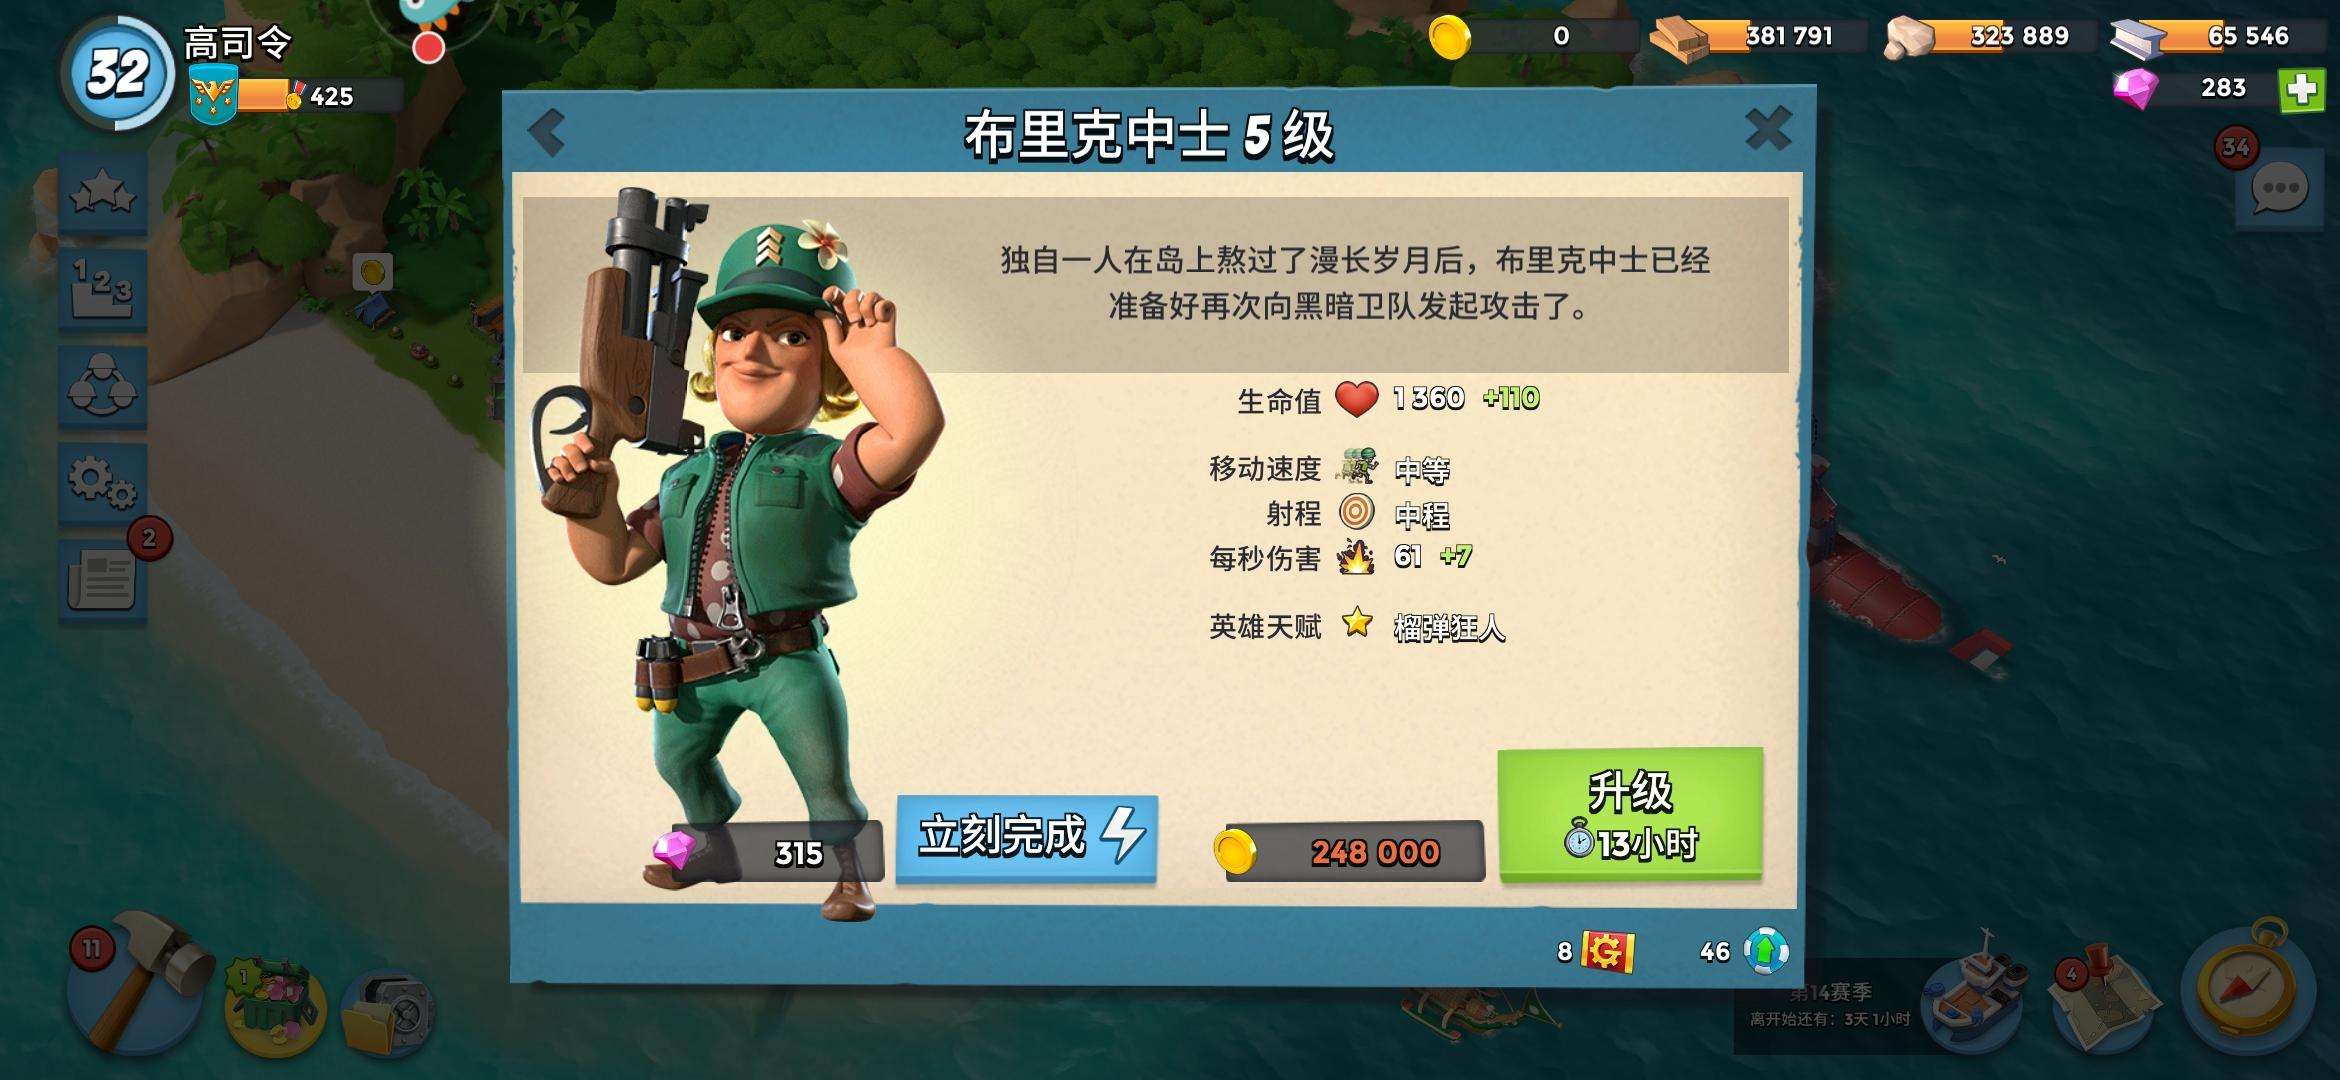 海岛奇兵：加速血清，最受欢迎的战舰附加技能 - 海岛奇兵资讯-小米游戏中心